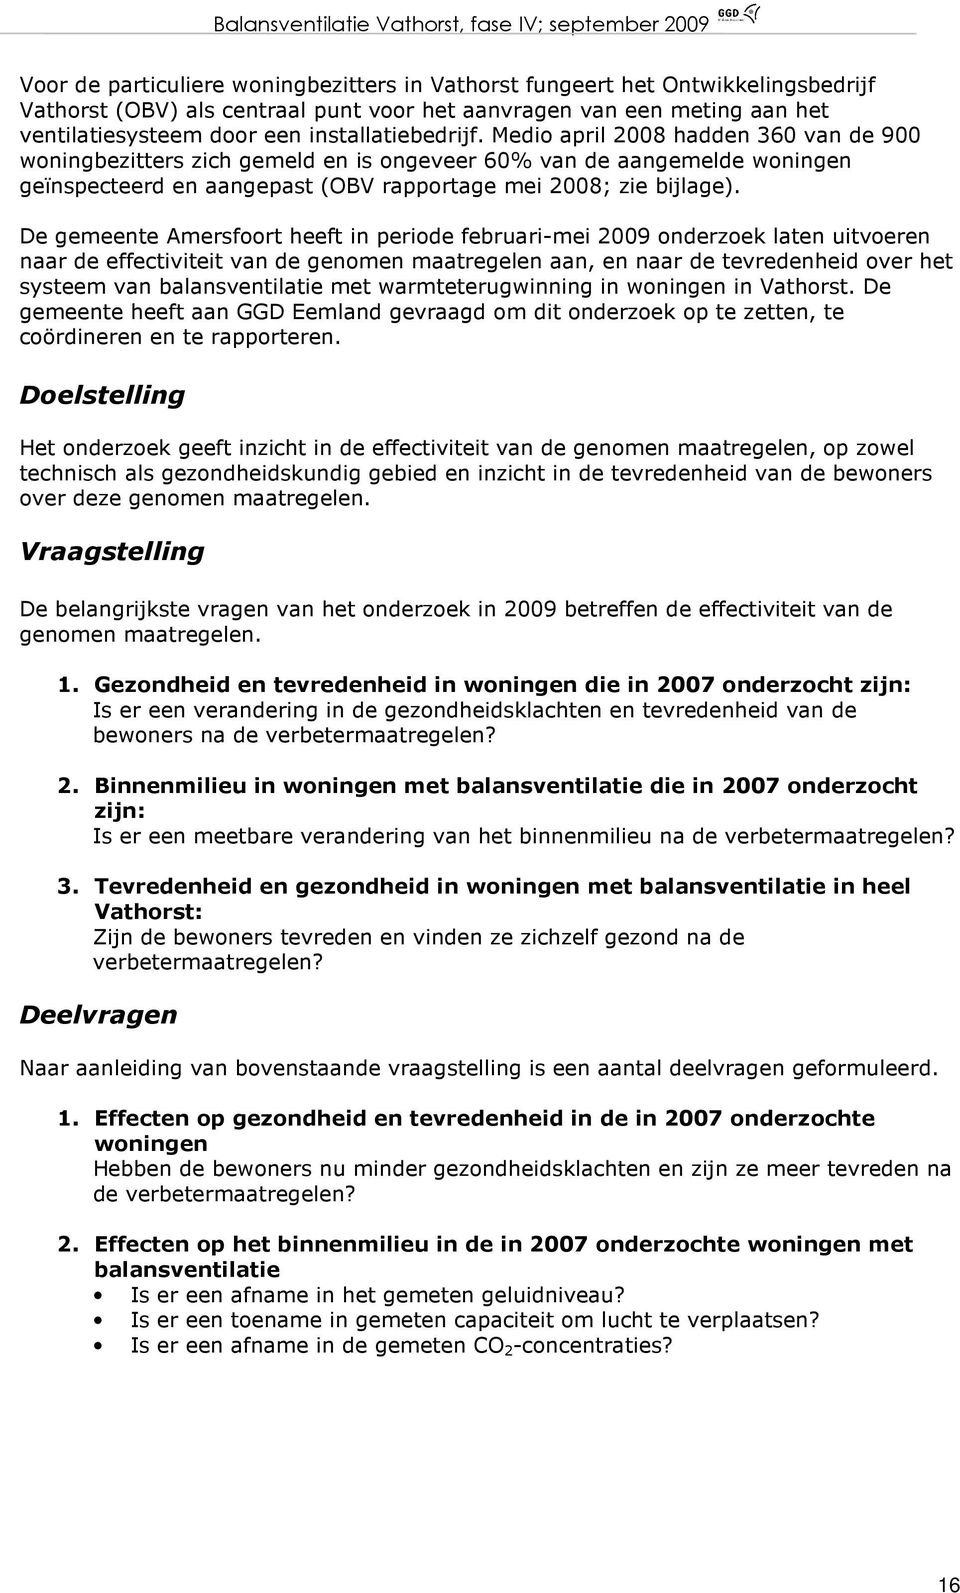 De gemeente Amersfoort heeft in periode februari-mei 2009 onderzoek laten uitvoeren naar de effectiviteit van de genomen maatregelen aan, en naar de tevredenheid over het systeem van balansventilatie